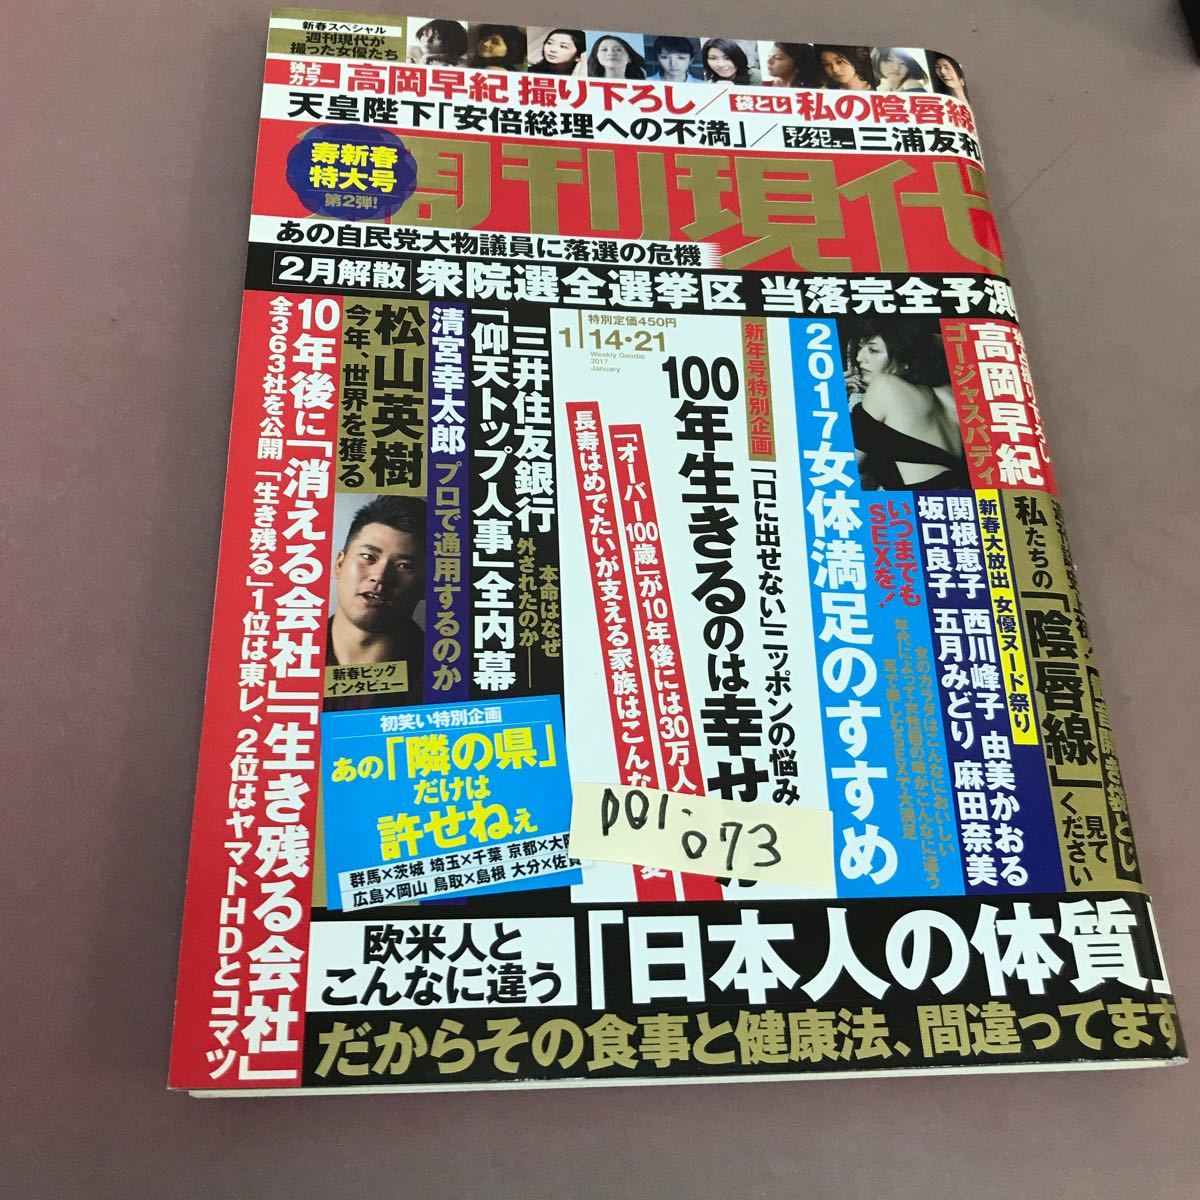 D01-073 週刊現代 1月14・21日号 講談社 平成29年1月21日発行